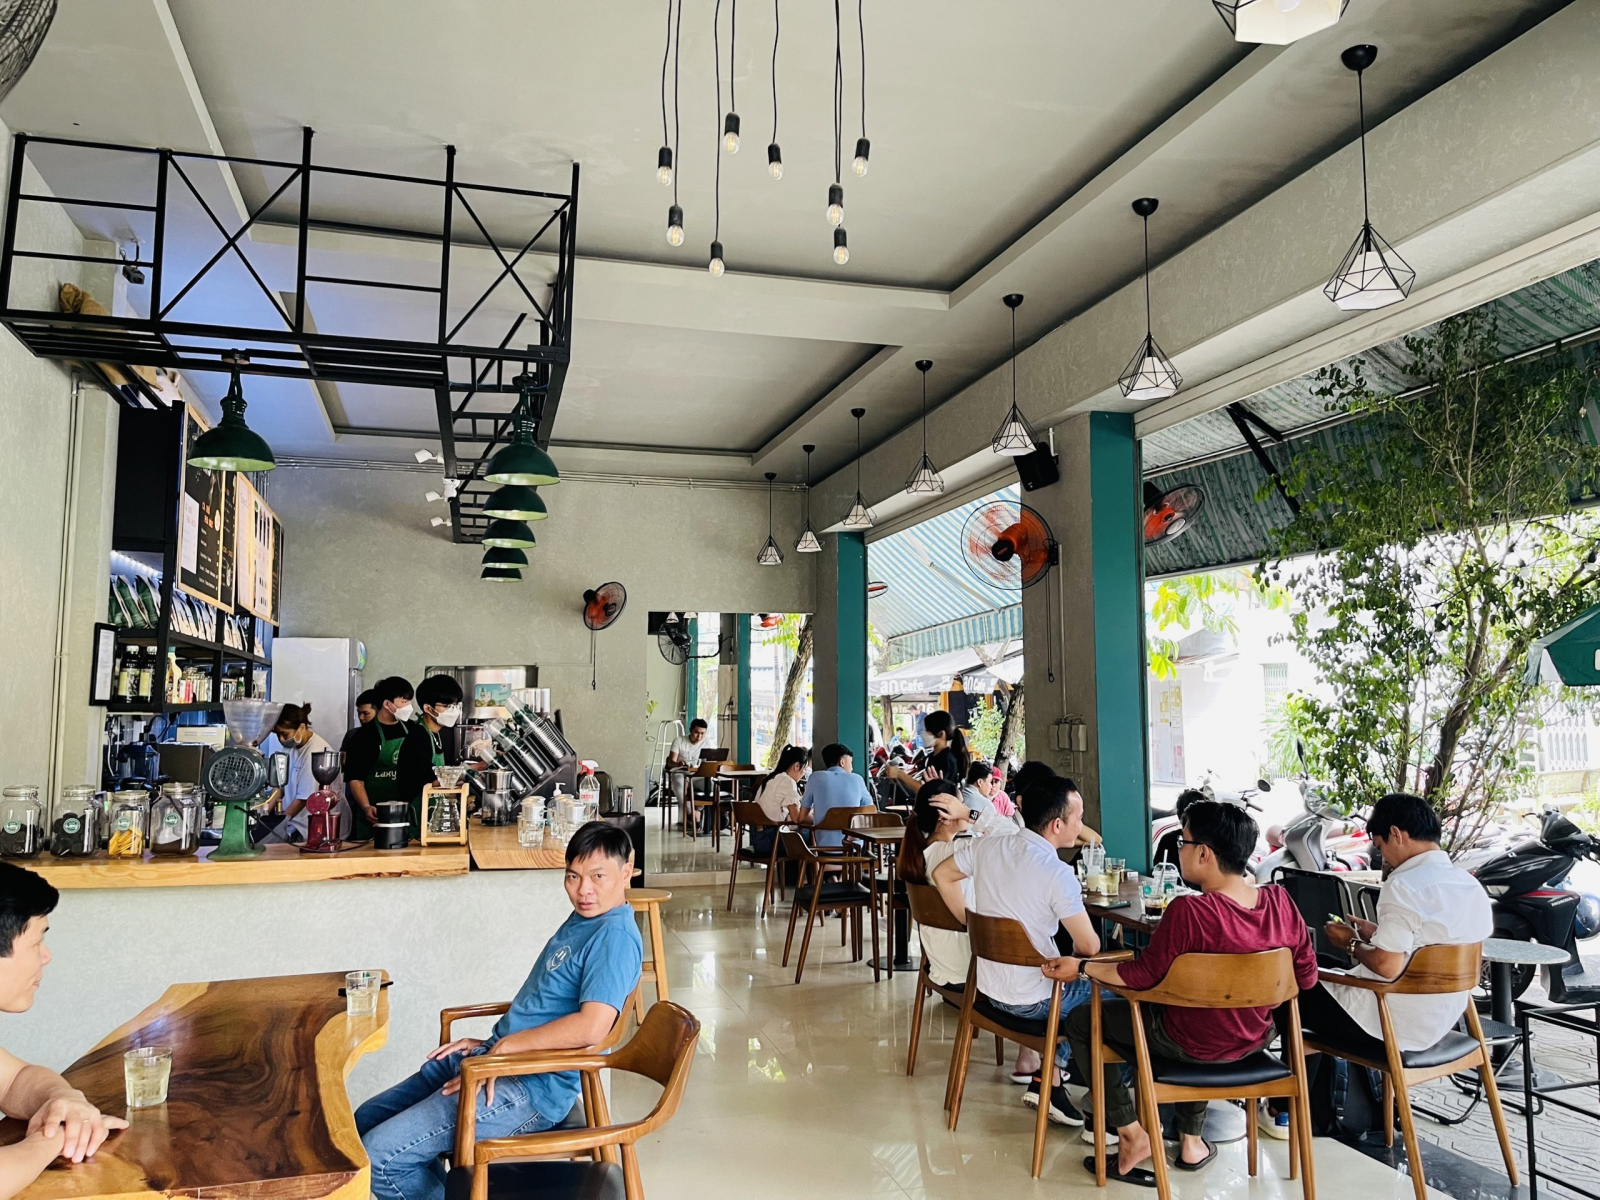 Laxy Coffee đã chuyển về địa điểm mới 103 Trương Vĩnh Ký, Q.TP